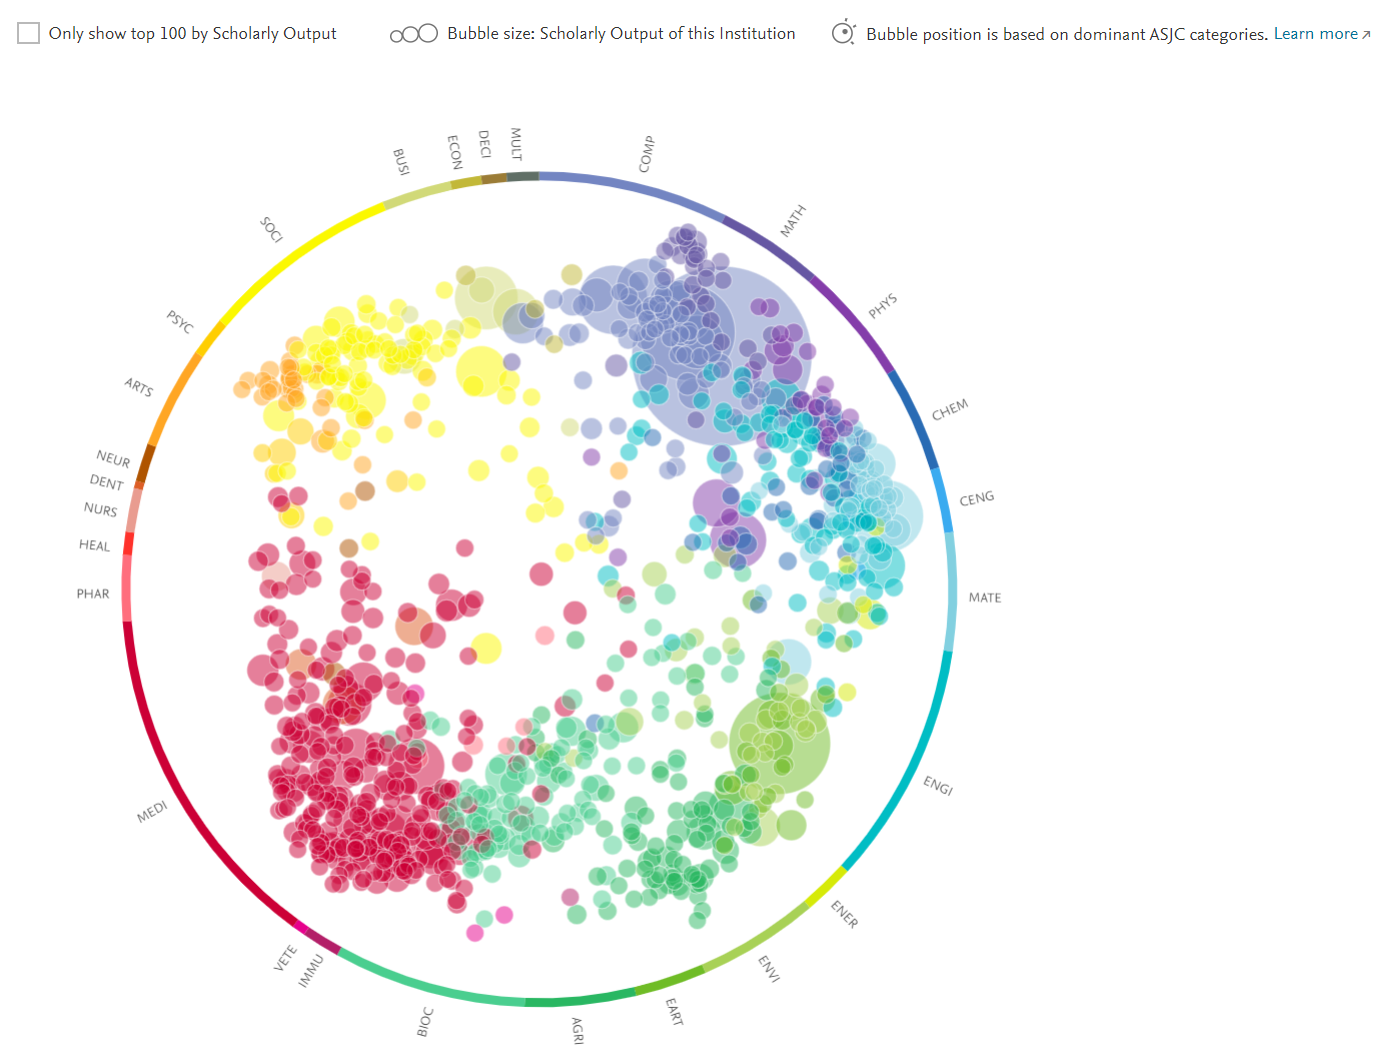 Kuvassa esimerkki entiteetin tarkastelusta sille tunnistettujen tutkimusaihealueiden kautta ns. Wheel of Science näkymän kautta. Ns. tieteen pyörän sisällä on nähtävissä satoja eri kokoisia ja värisiä palloja. Jokainen pallo kuvaa yhtä tutkimusaihealuetta, koko perustuu julkaisumäärään, väri kuvaa keskeisintä ASJC-tieteenalaa ja sijainti mahdollista monitieteisyyden tunnistamisen.